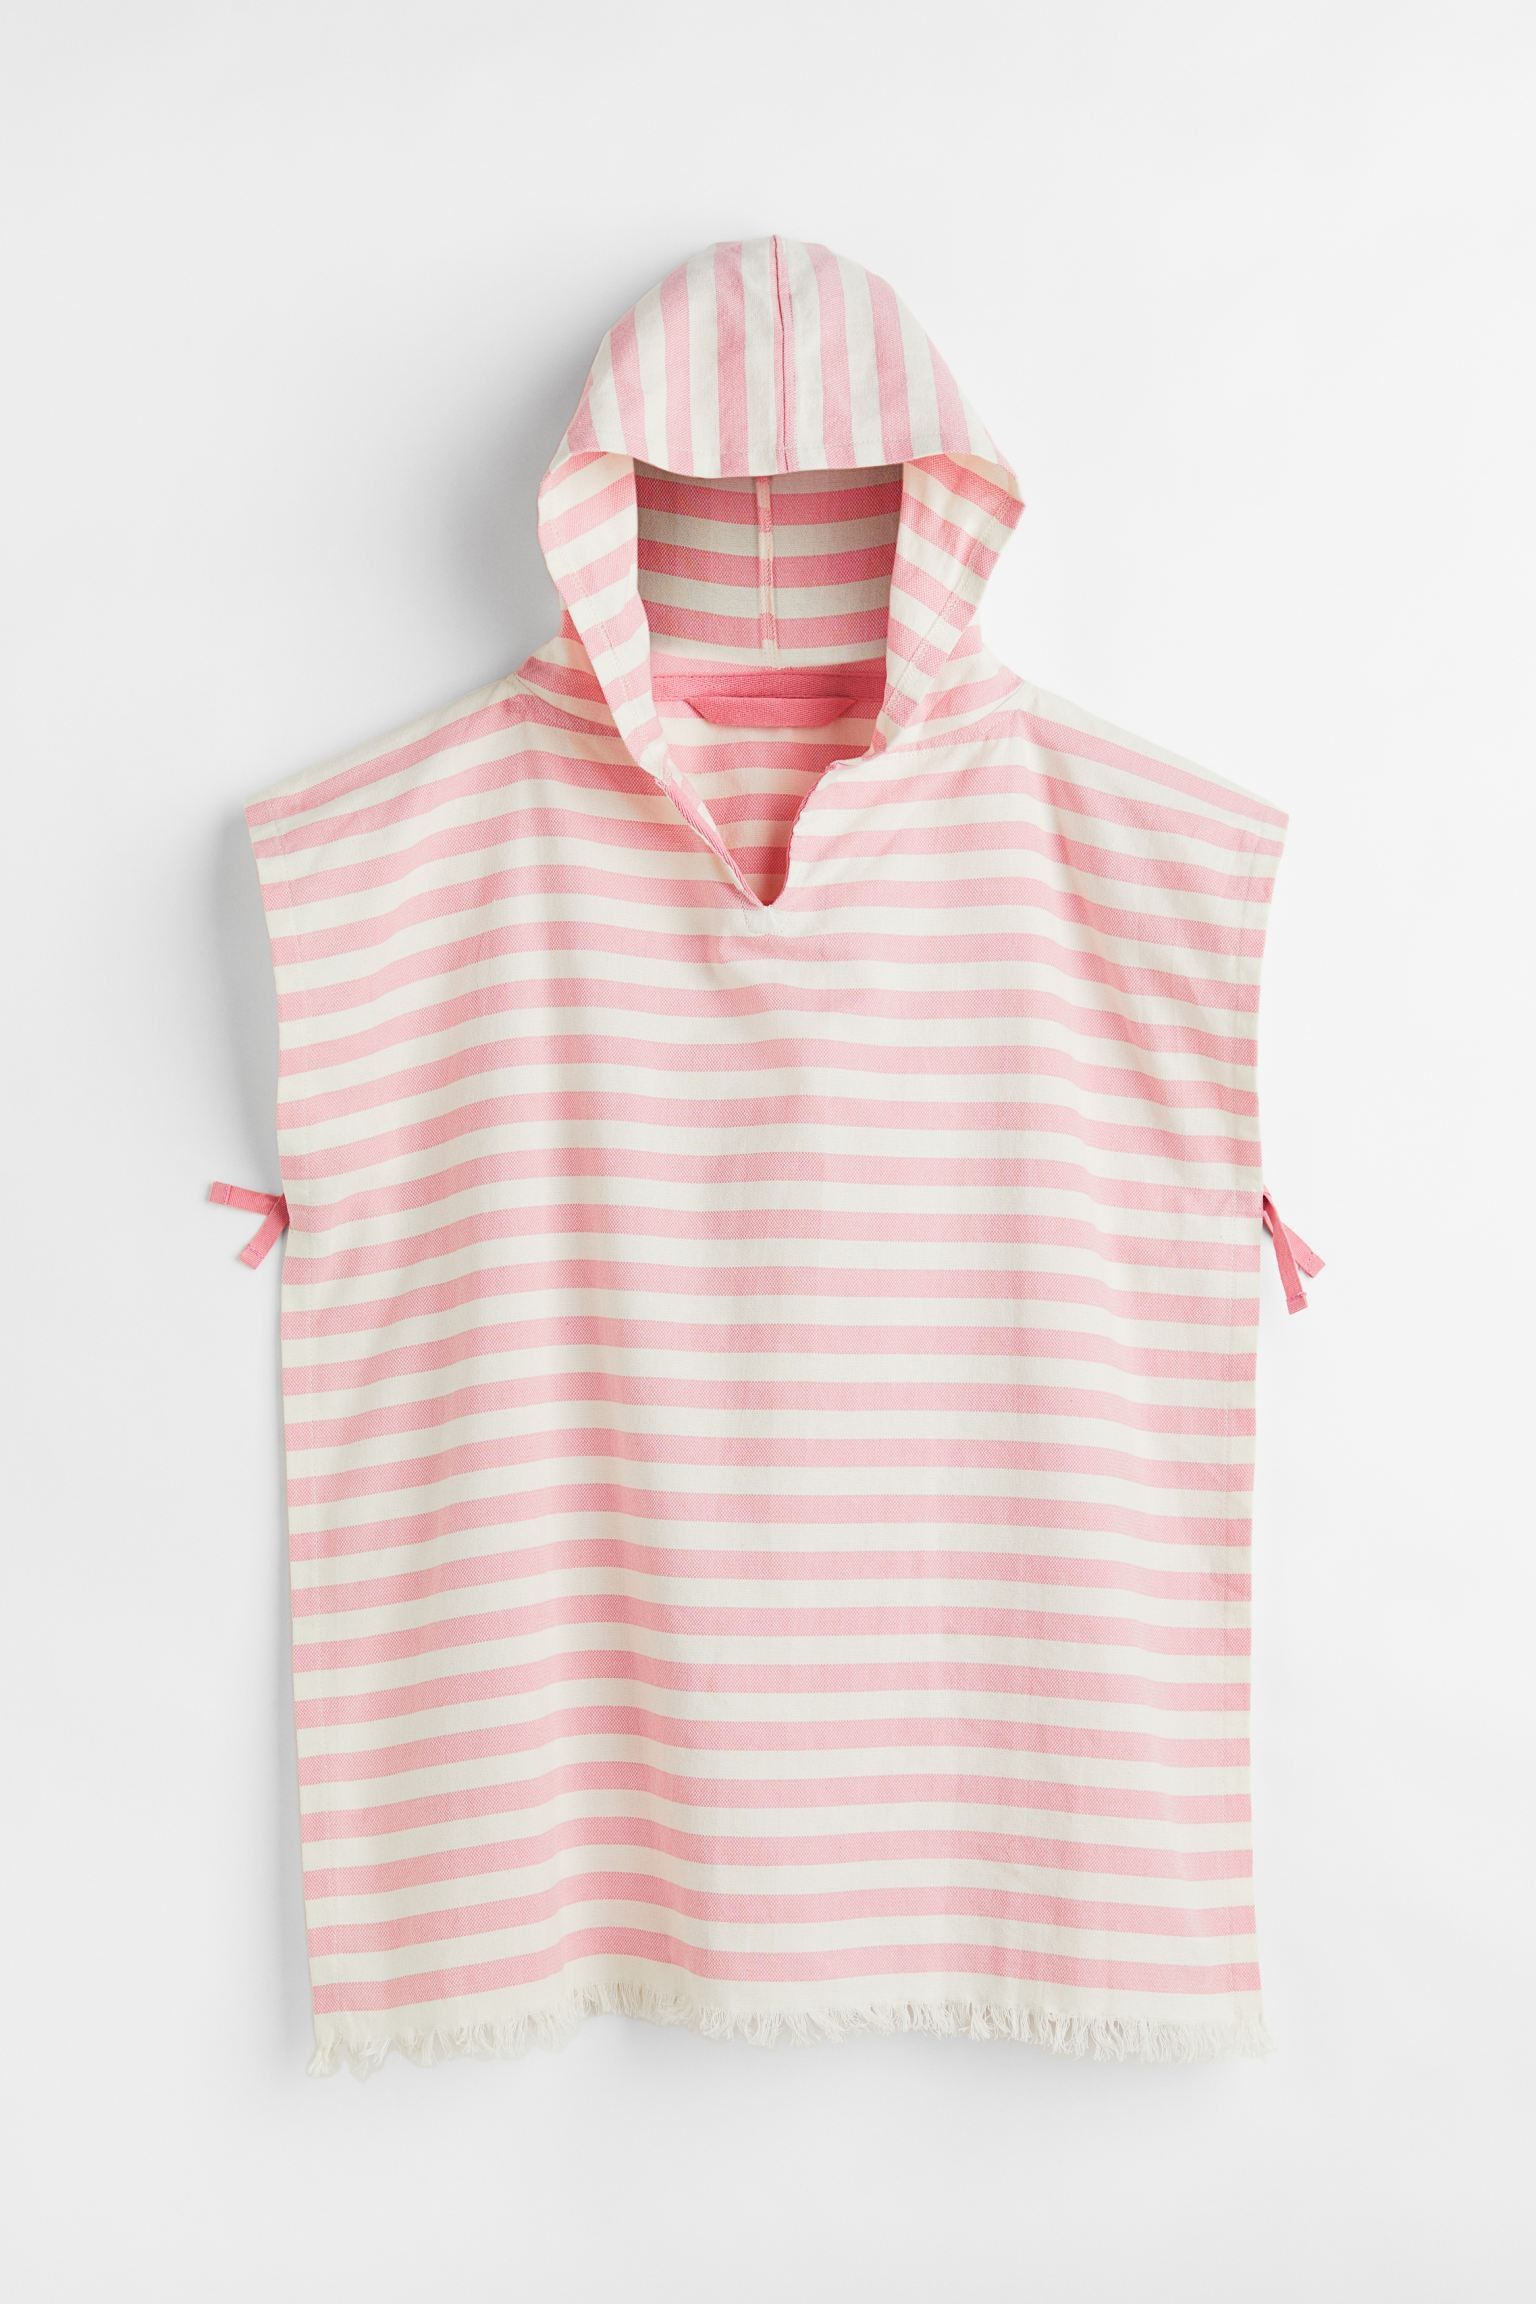 H&M Home Хлопковое пляжное пончо, Светло-розовый/Полосатый, 60x70 1049557002 | 1049557002